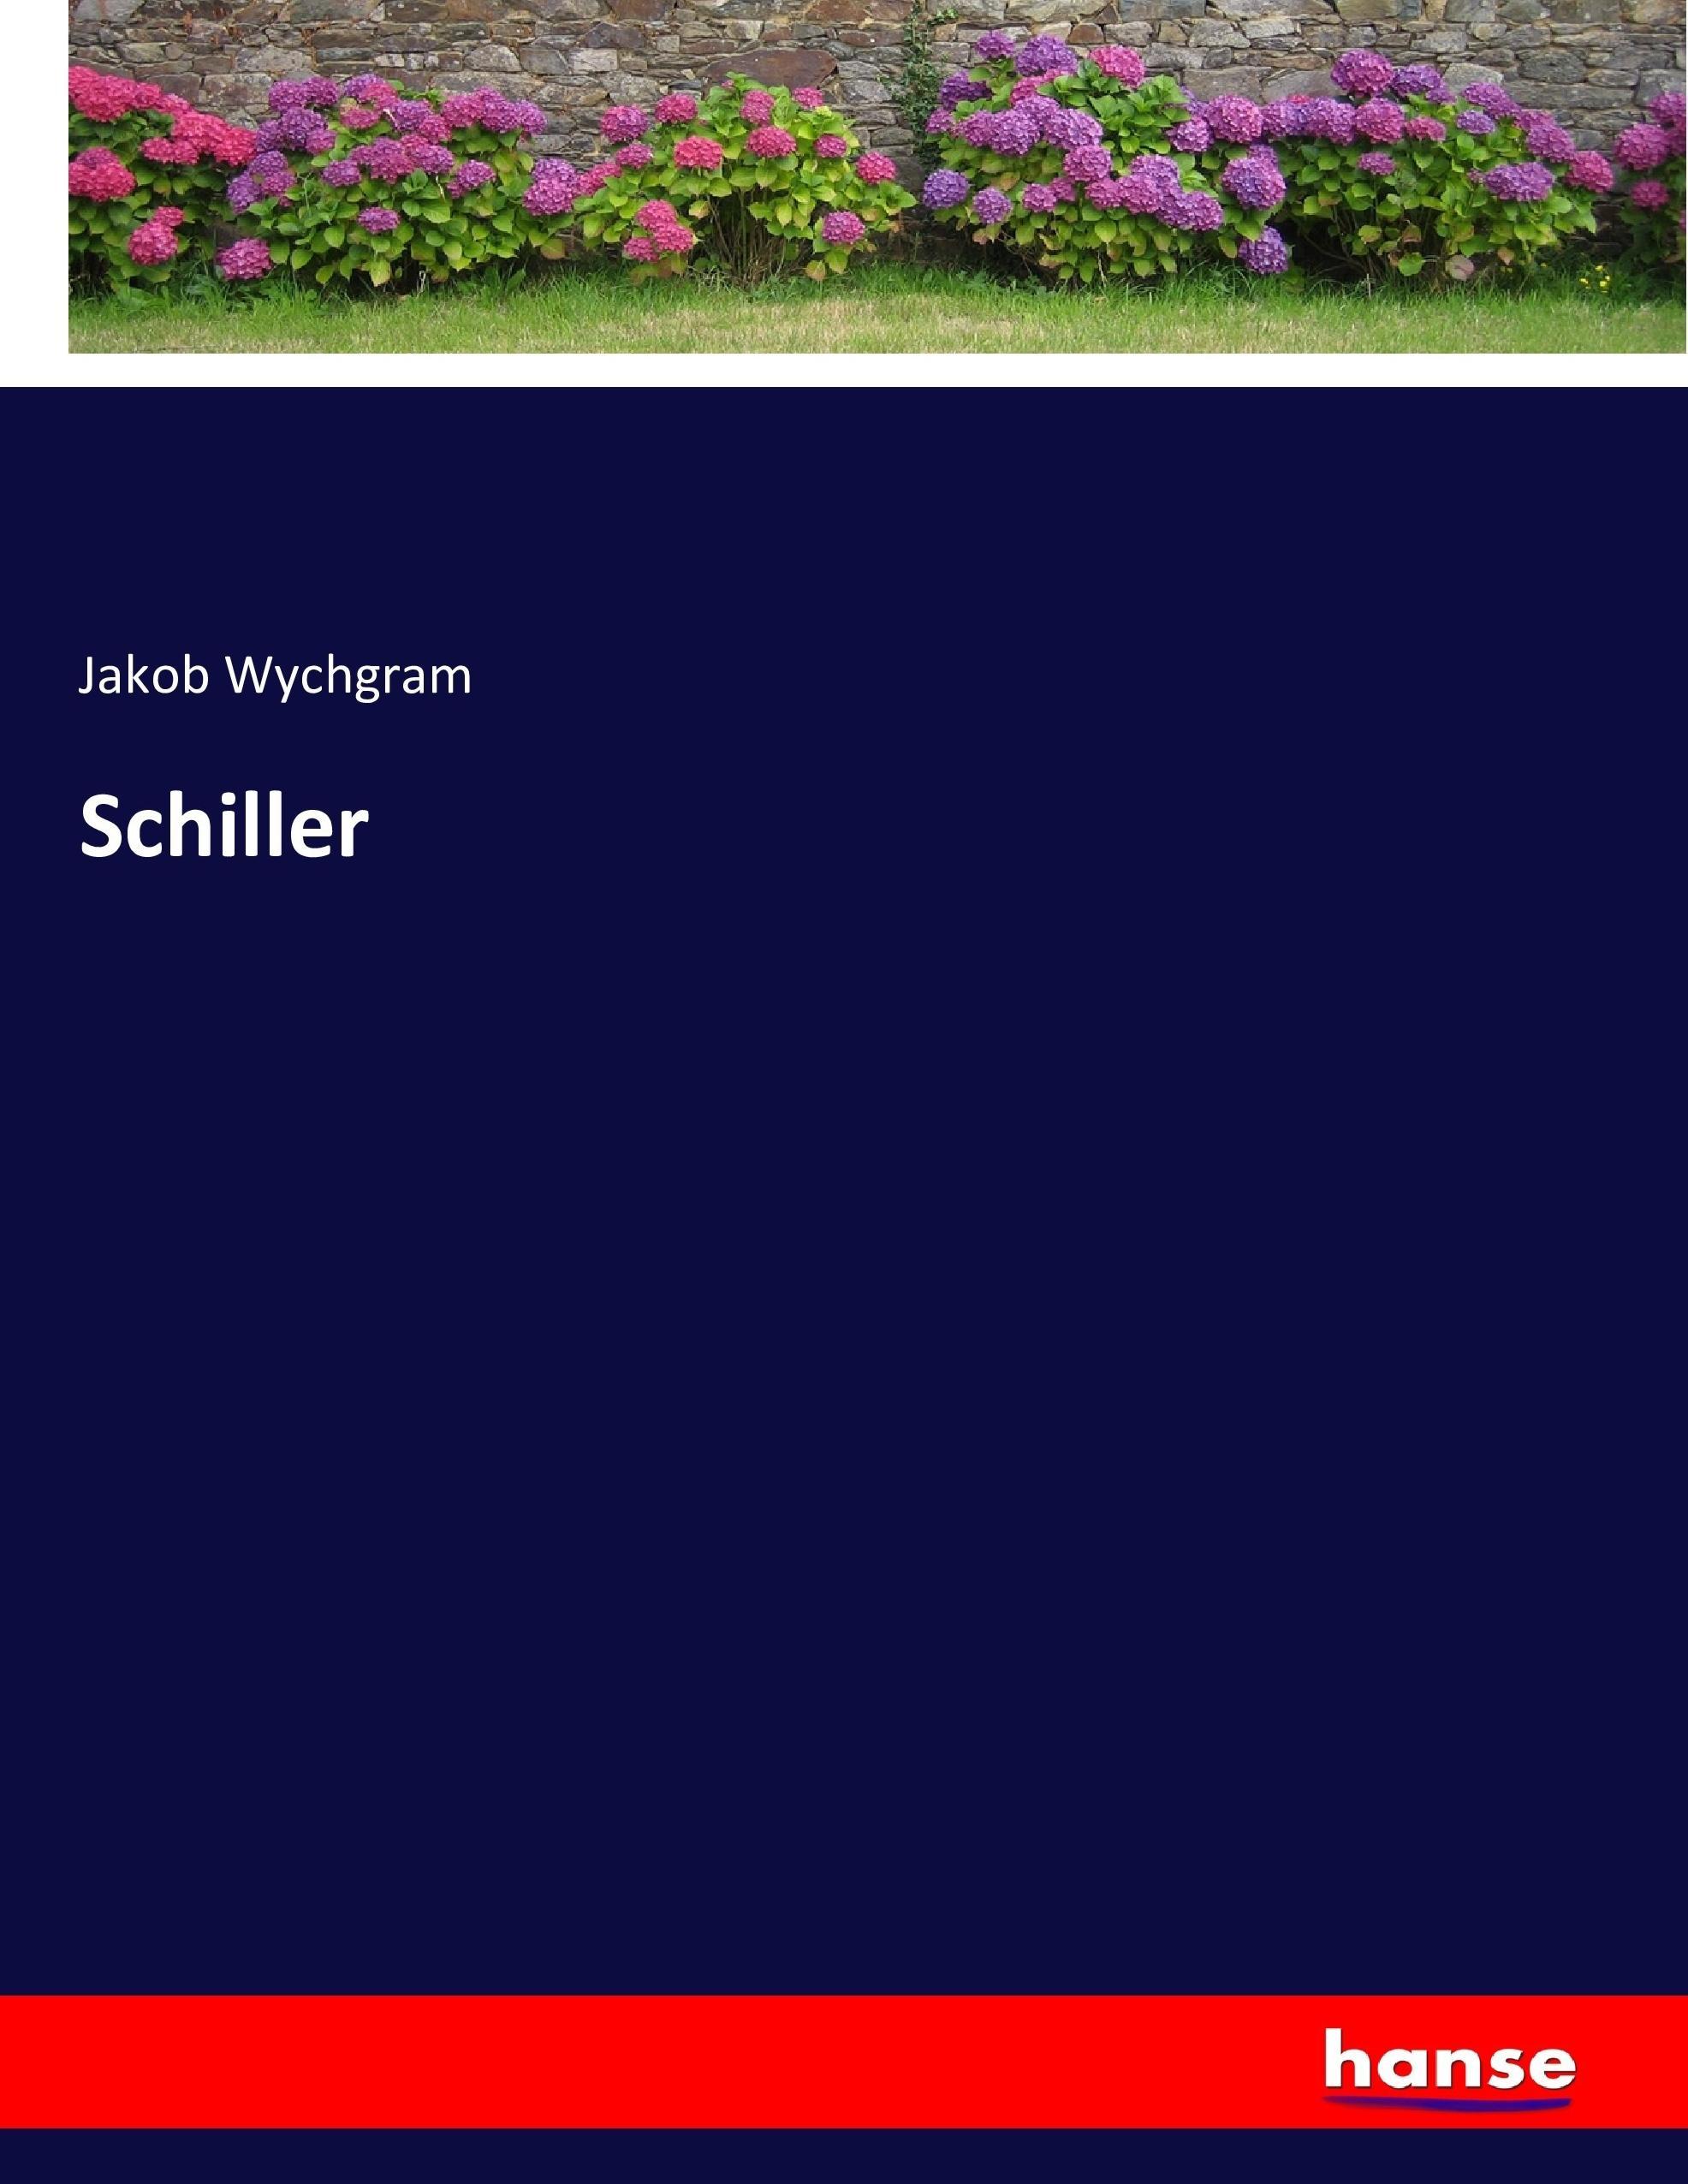 Schiller / Jakob Wychgram / Taschenbuch / Paperback / 688 S. / Deutsch / 2016 / hansebooks / EAN 9783743370050 - Wychgram, Jakob